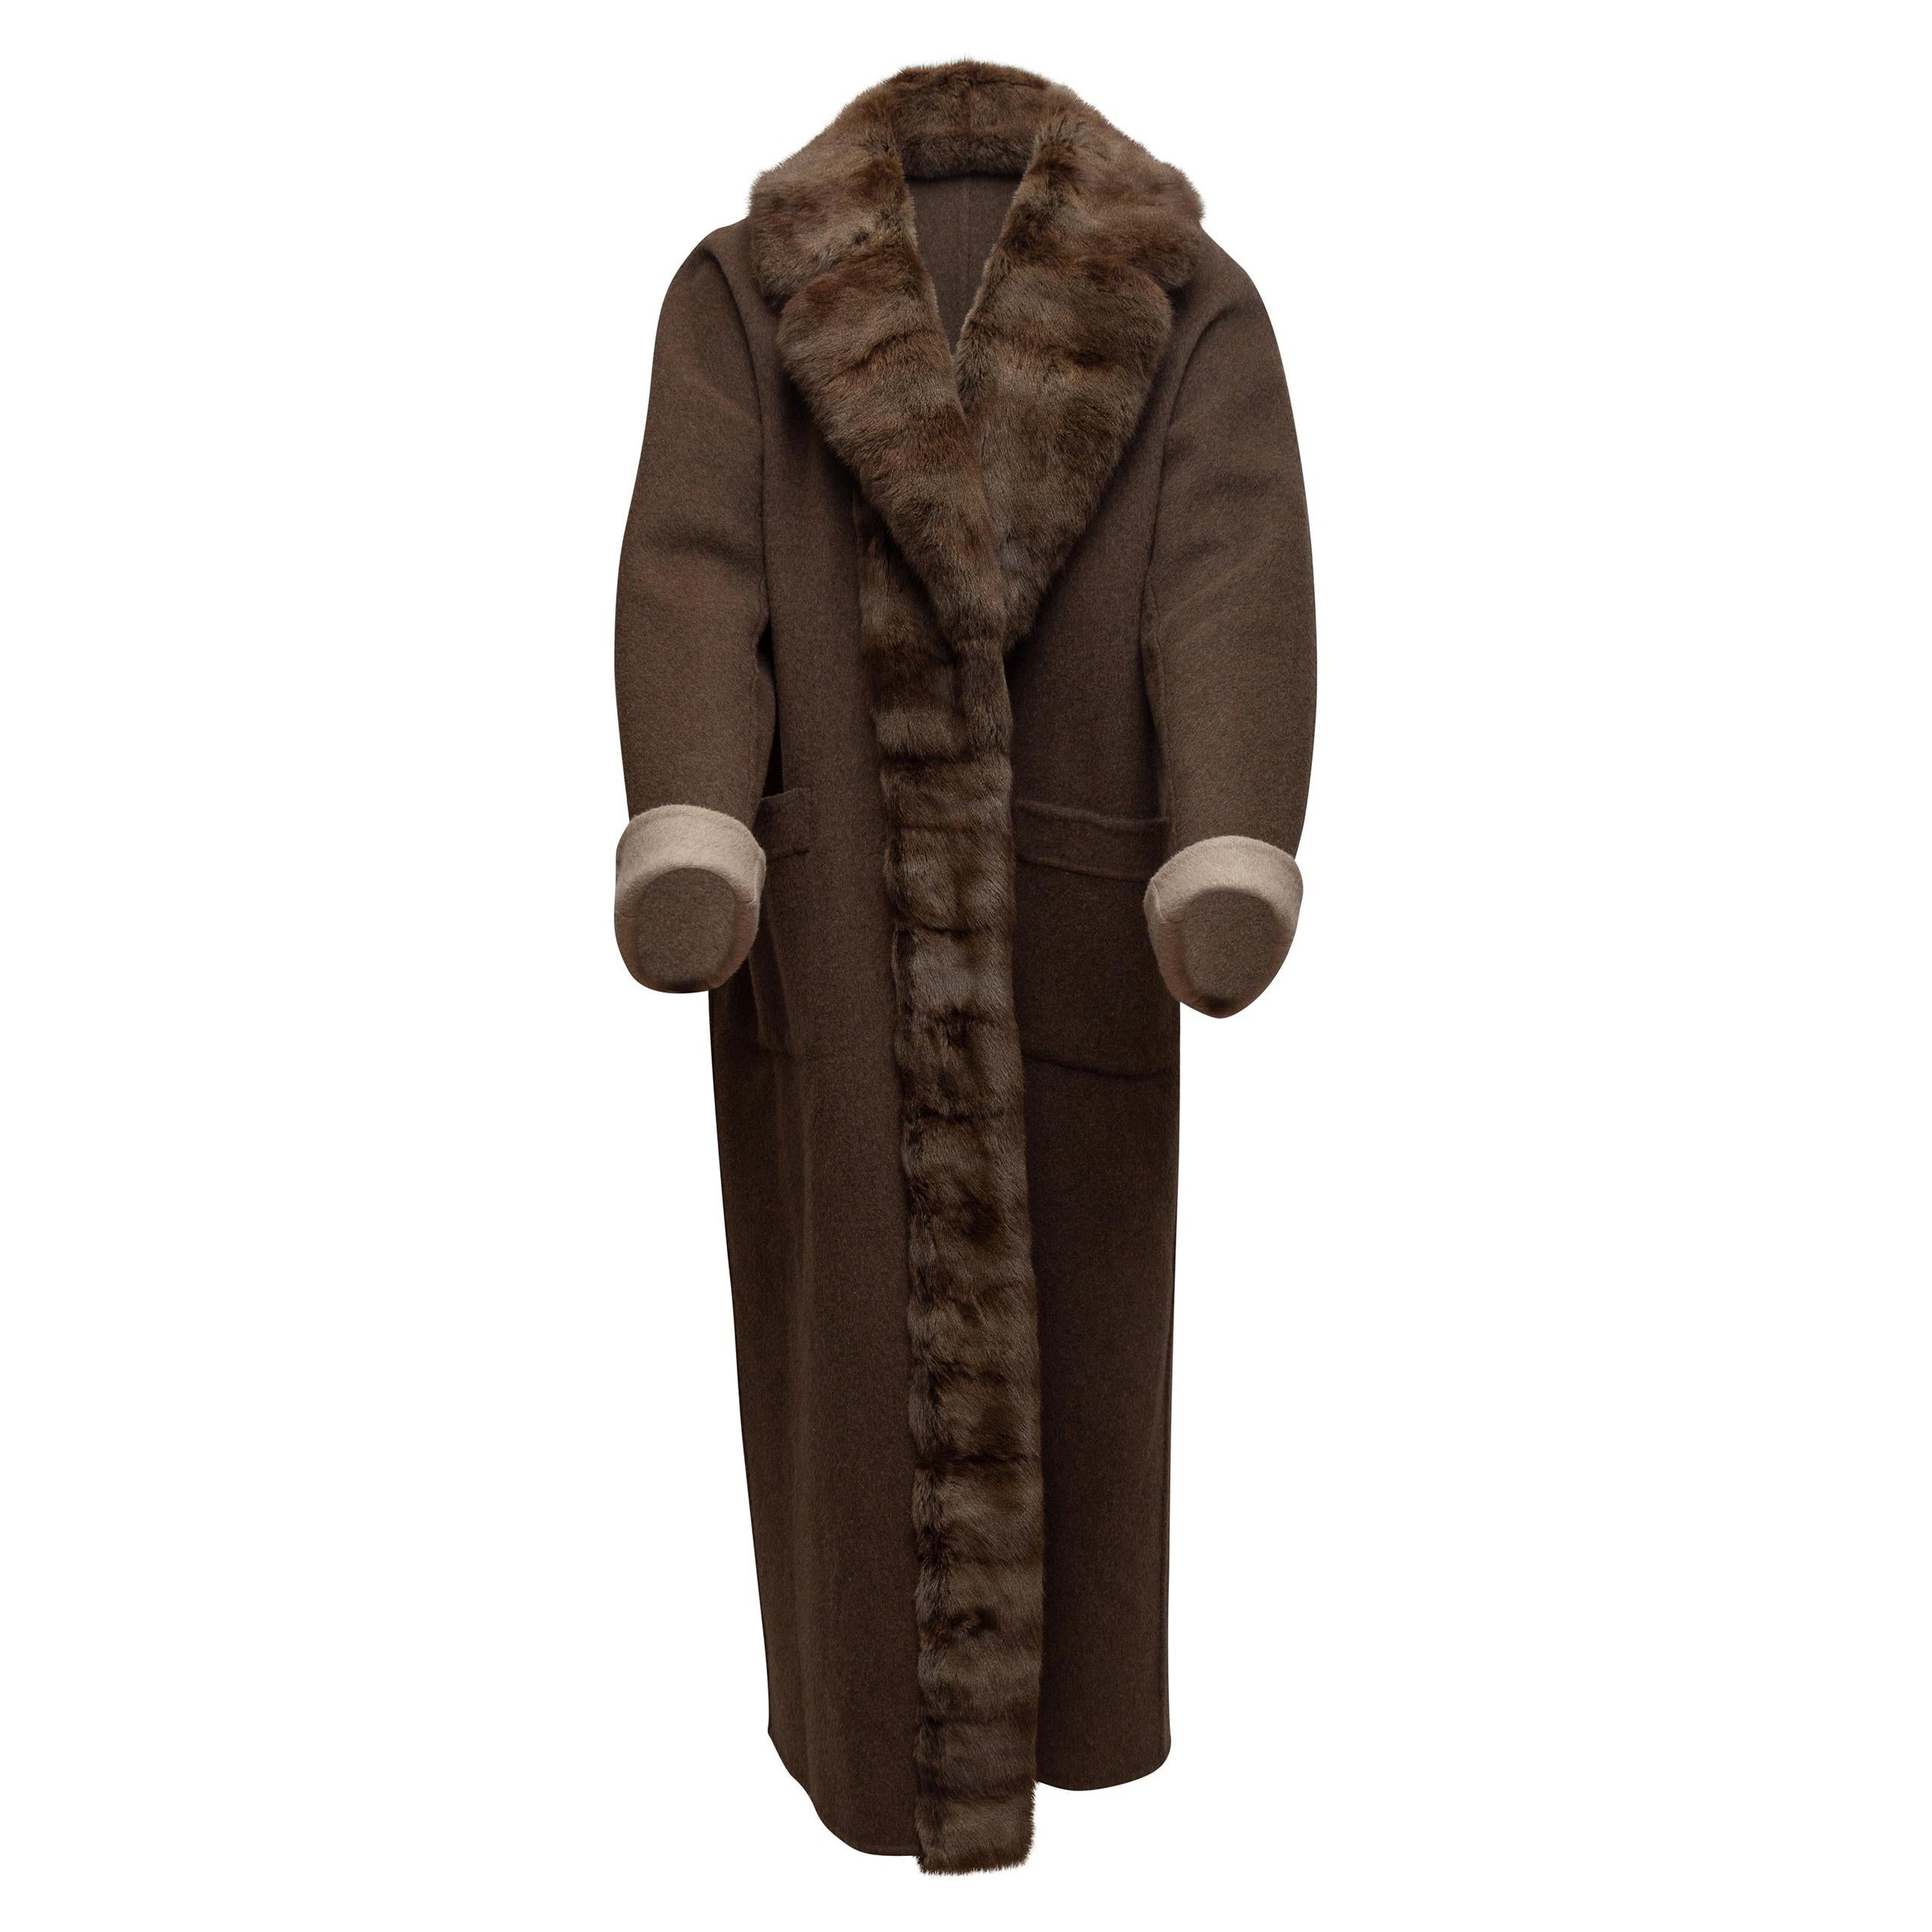 Davide Cenci Brown Cashmere Fur-Trimmed Coat